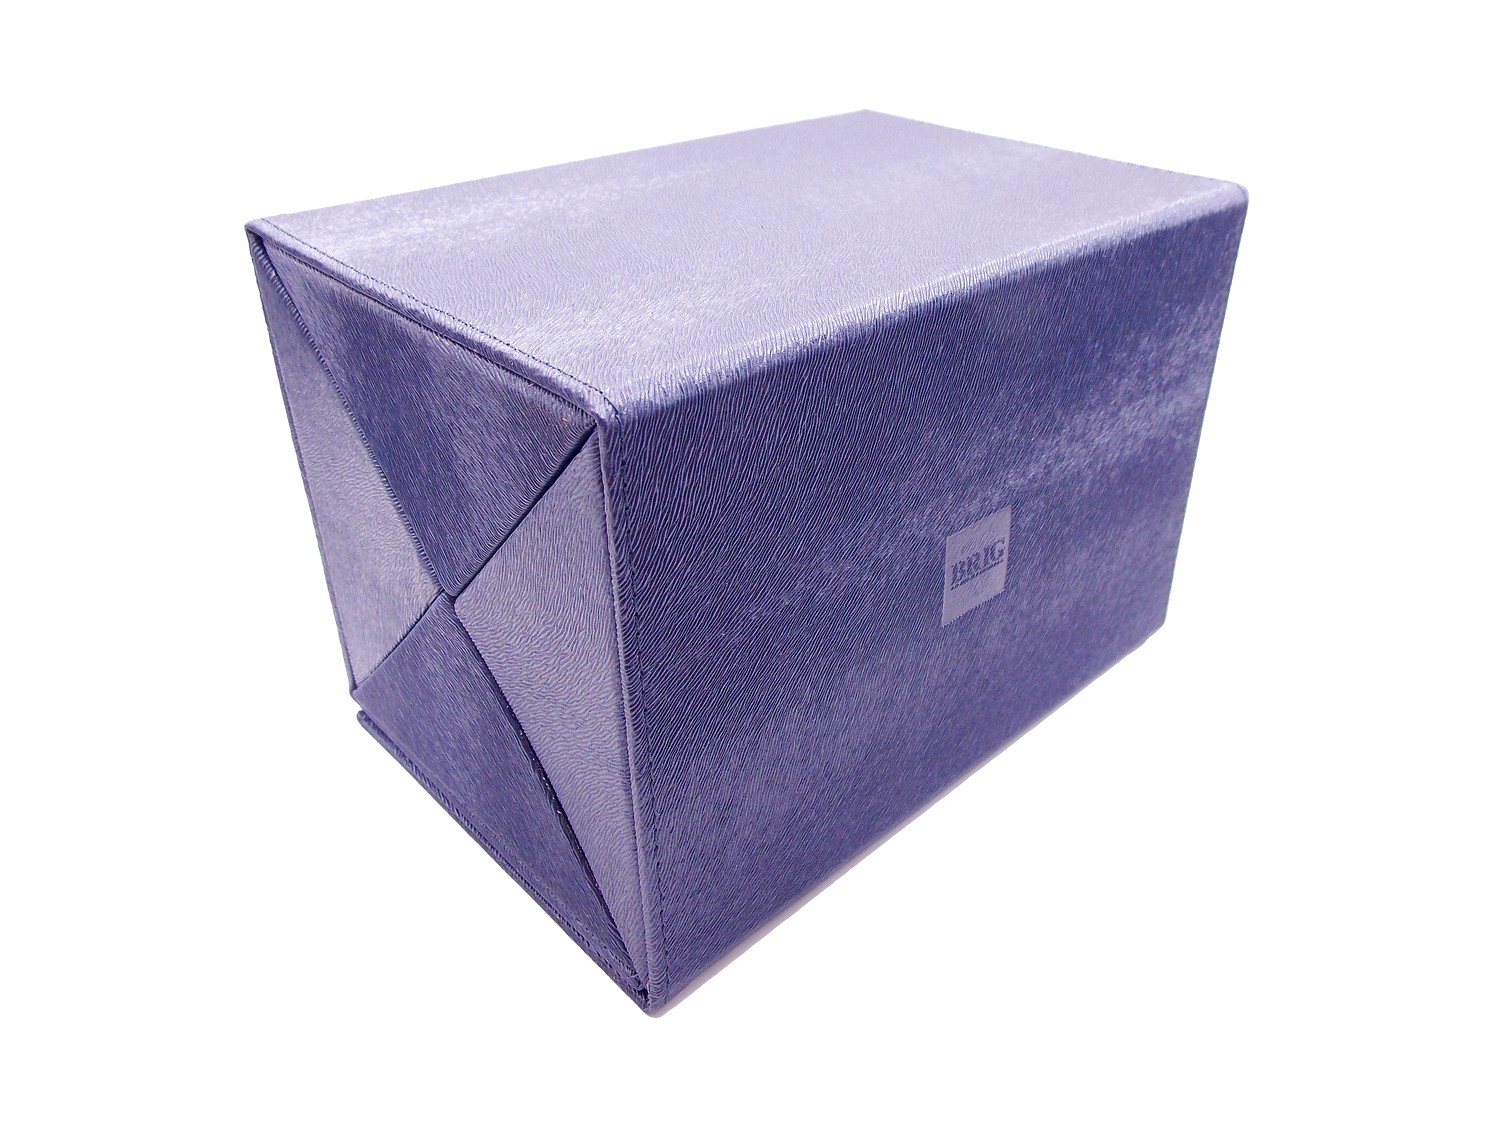 Мультифутляр BOX 4.110.50.02 мульти-футляр серебристо-синий